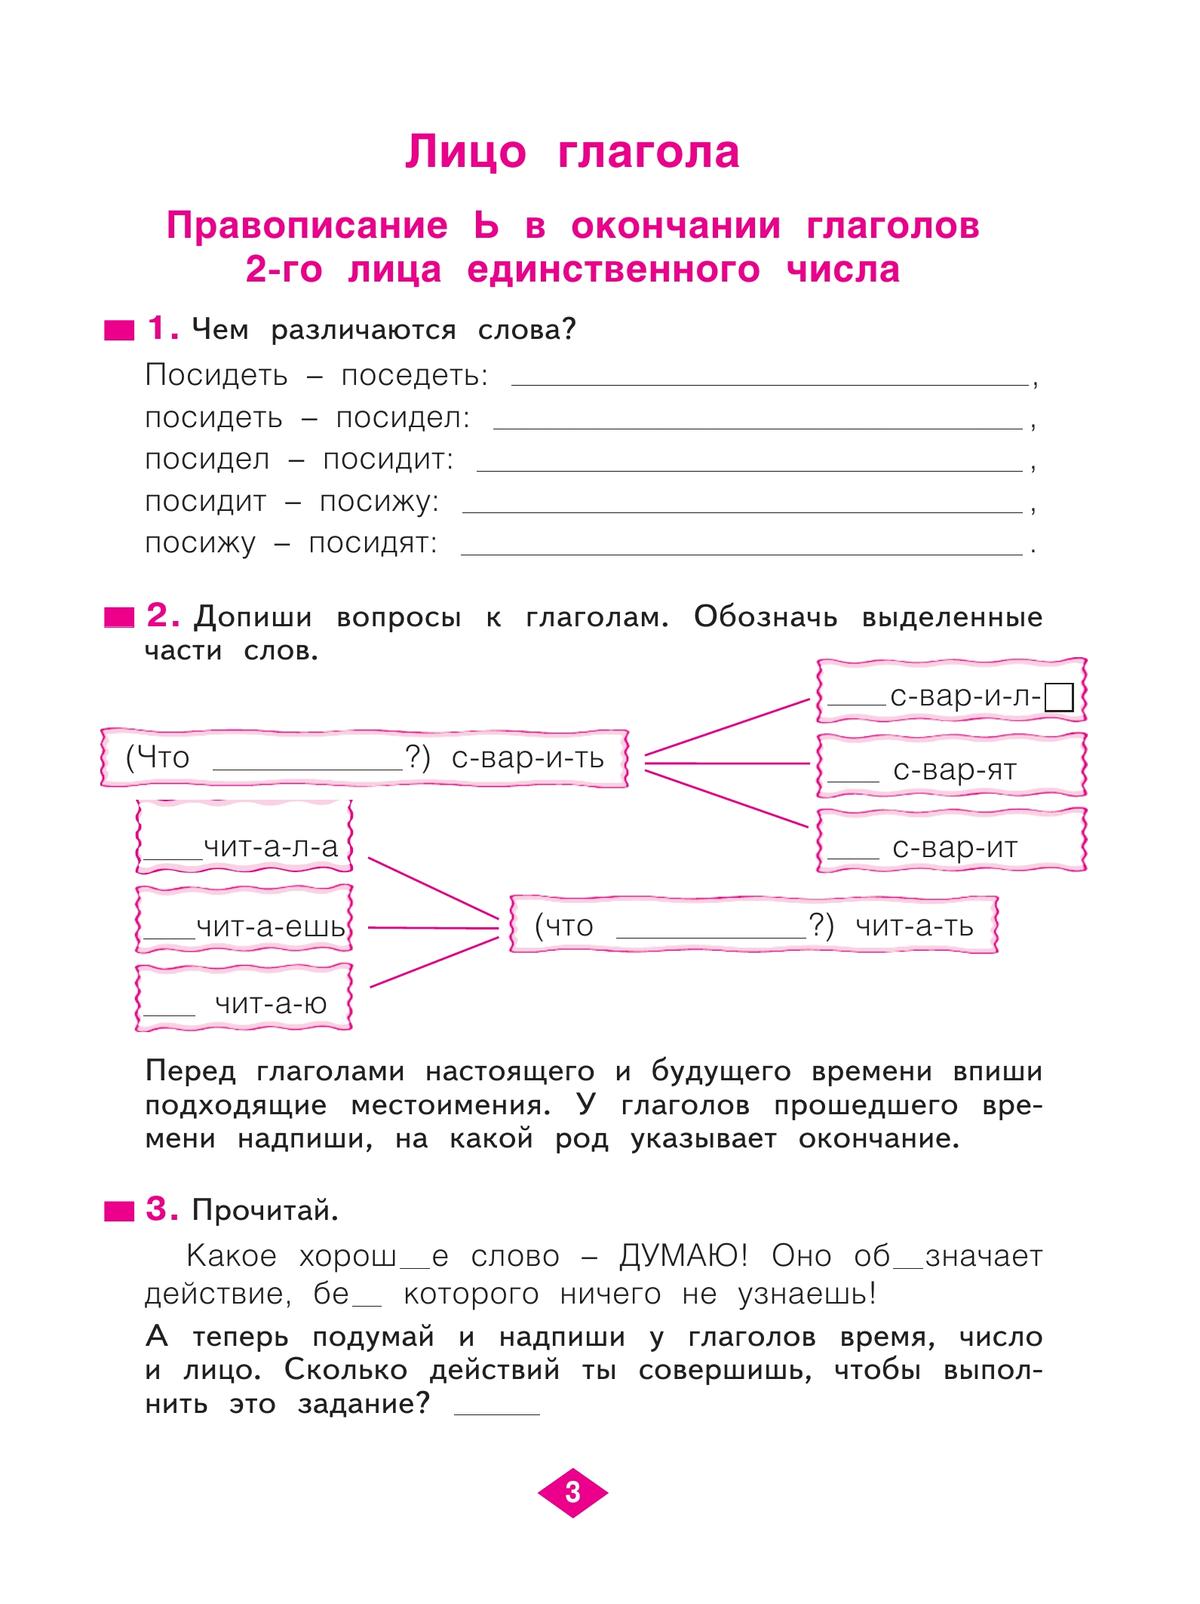 Русский язык. Рабочая тетрадь. 4 класс. В 4-х частях. Часть 3 5